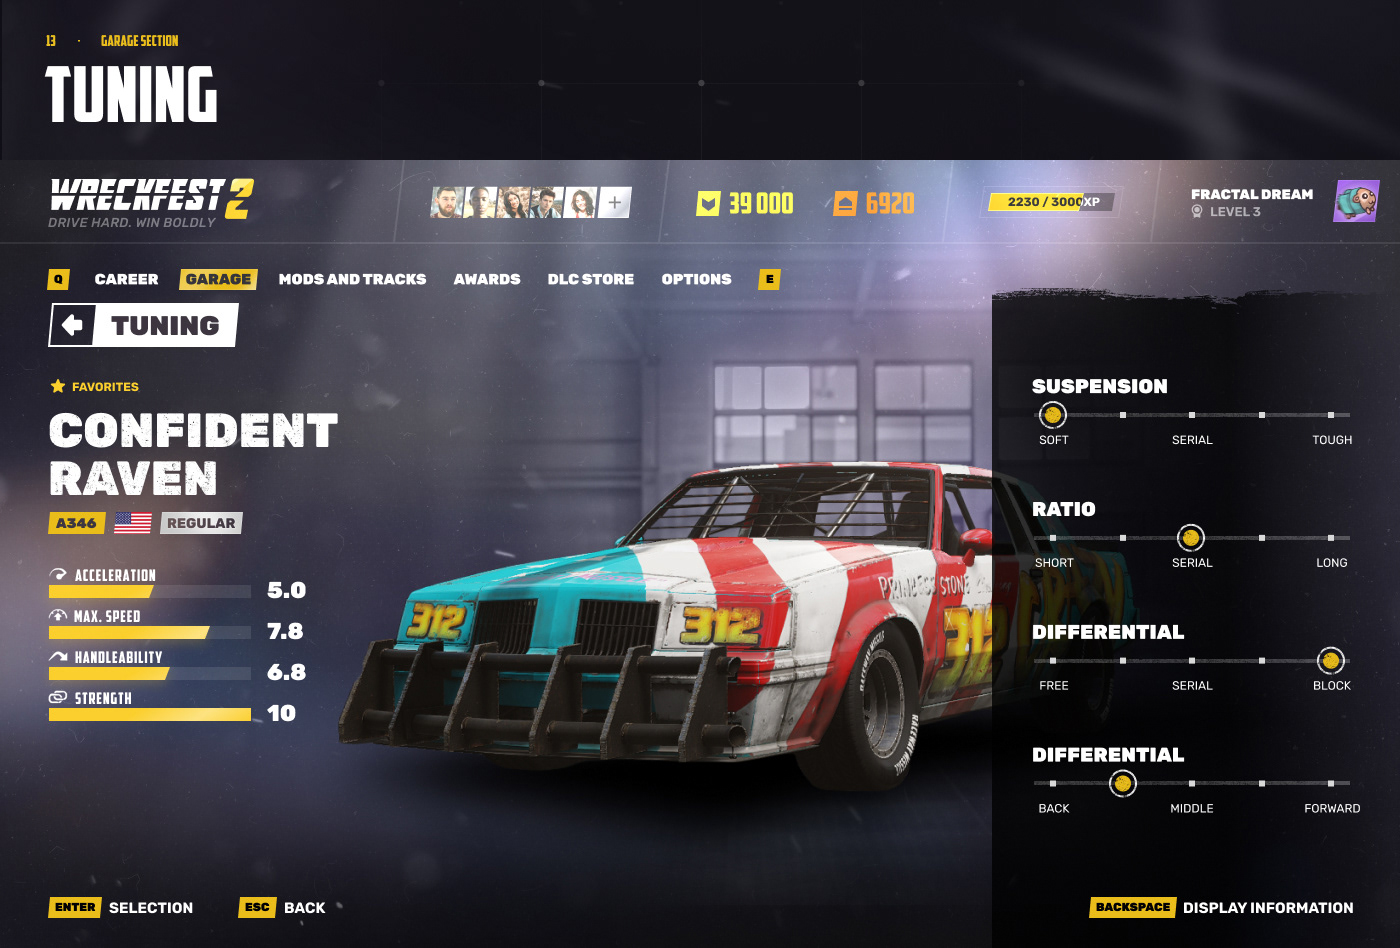 HUD UI user interface game design  concept art game hud design Racing Racing Game Wreckfest